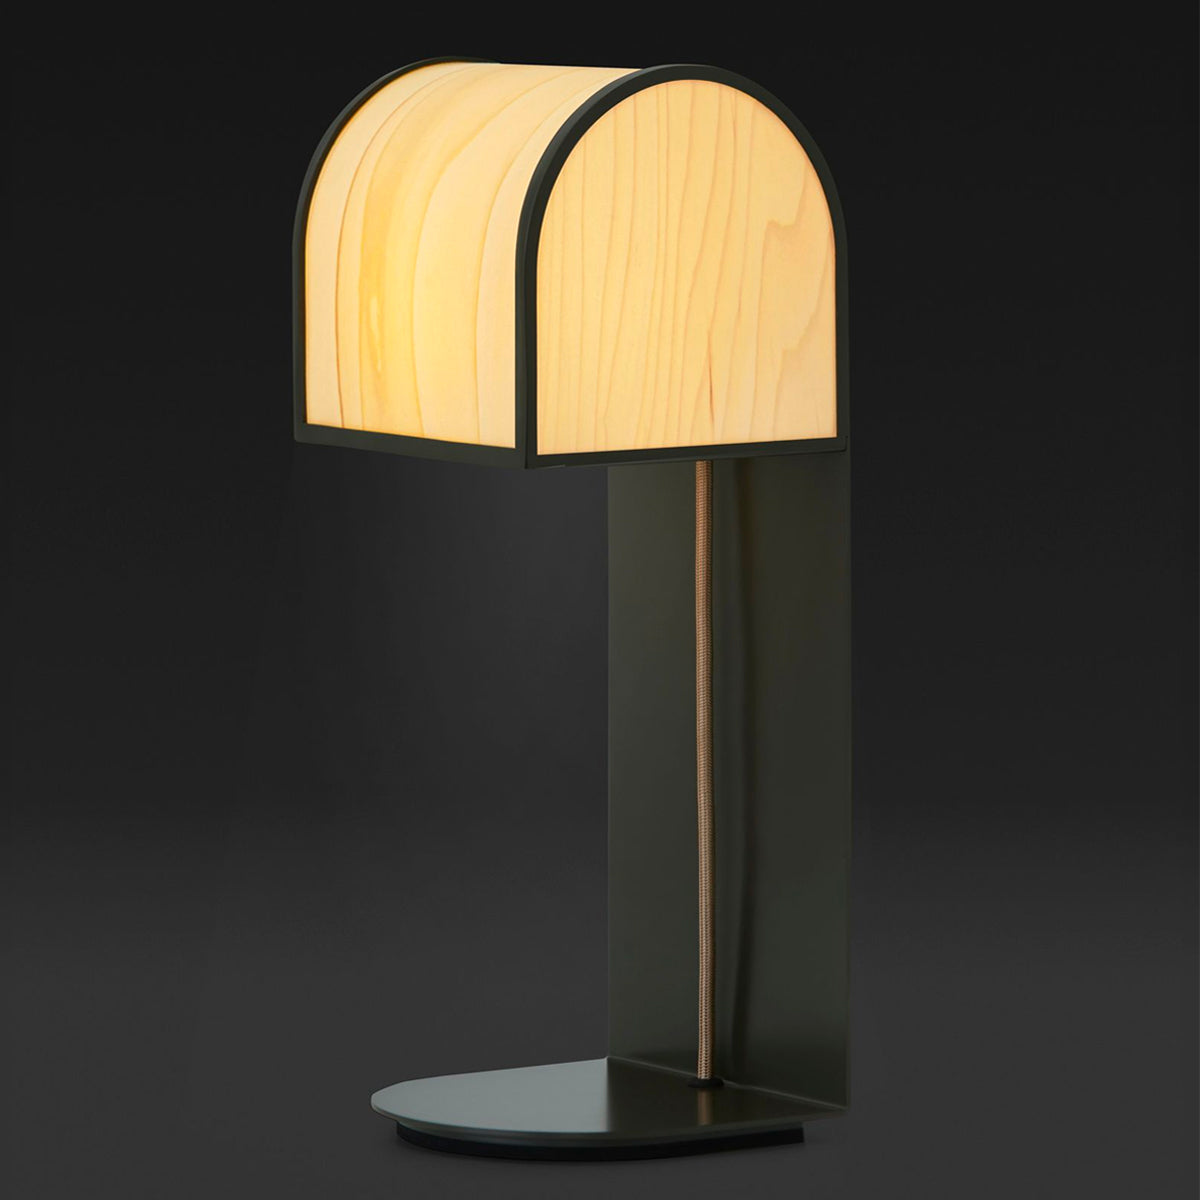 Osca Table Light by LZF | Do Shop